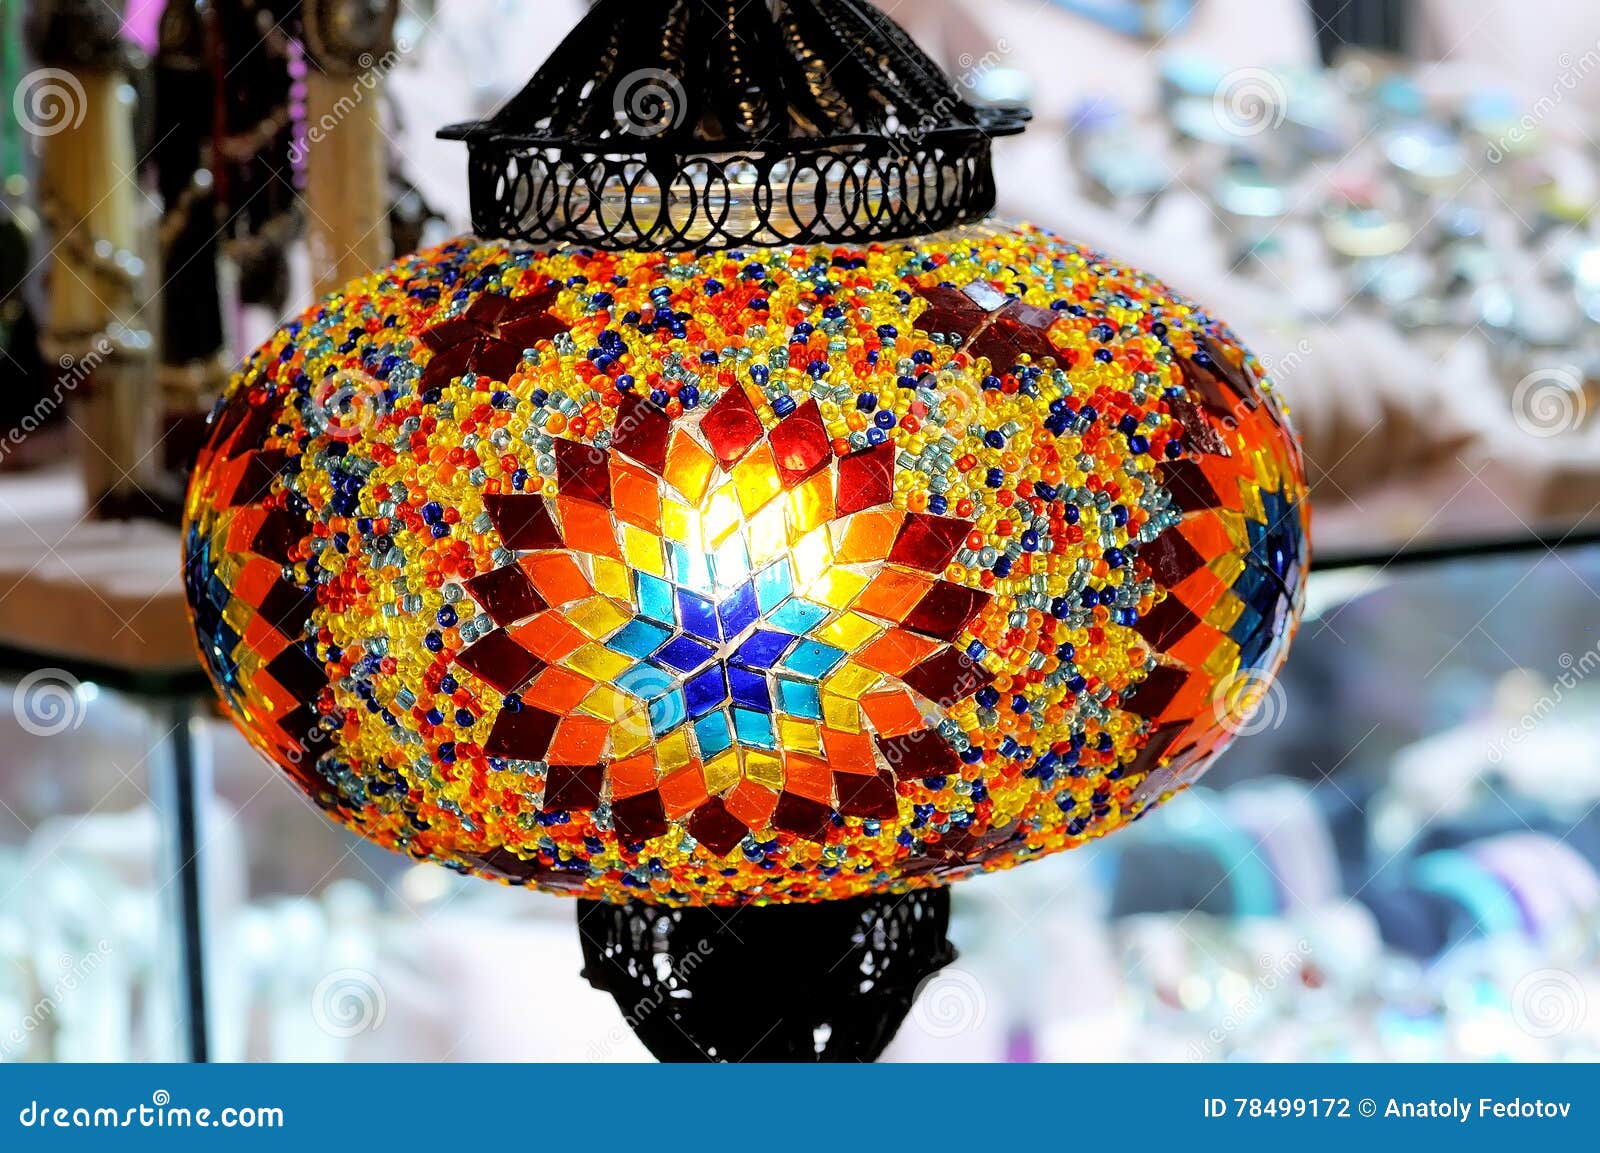 Lampe en verre ethnique multicolore